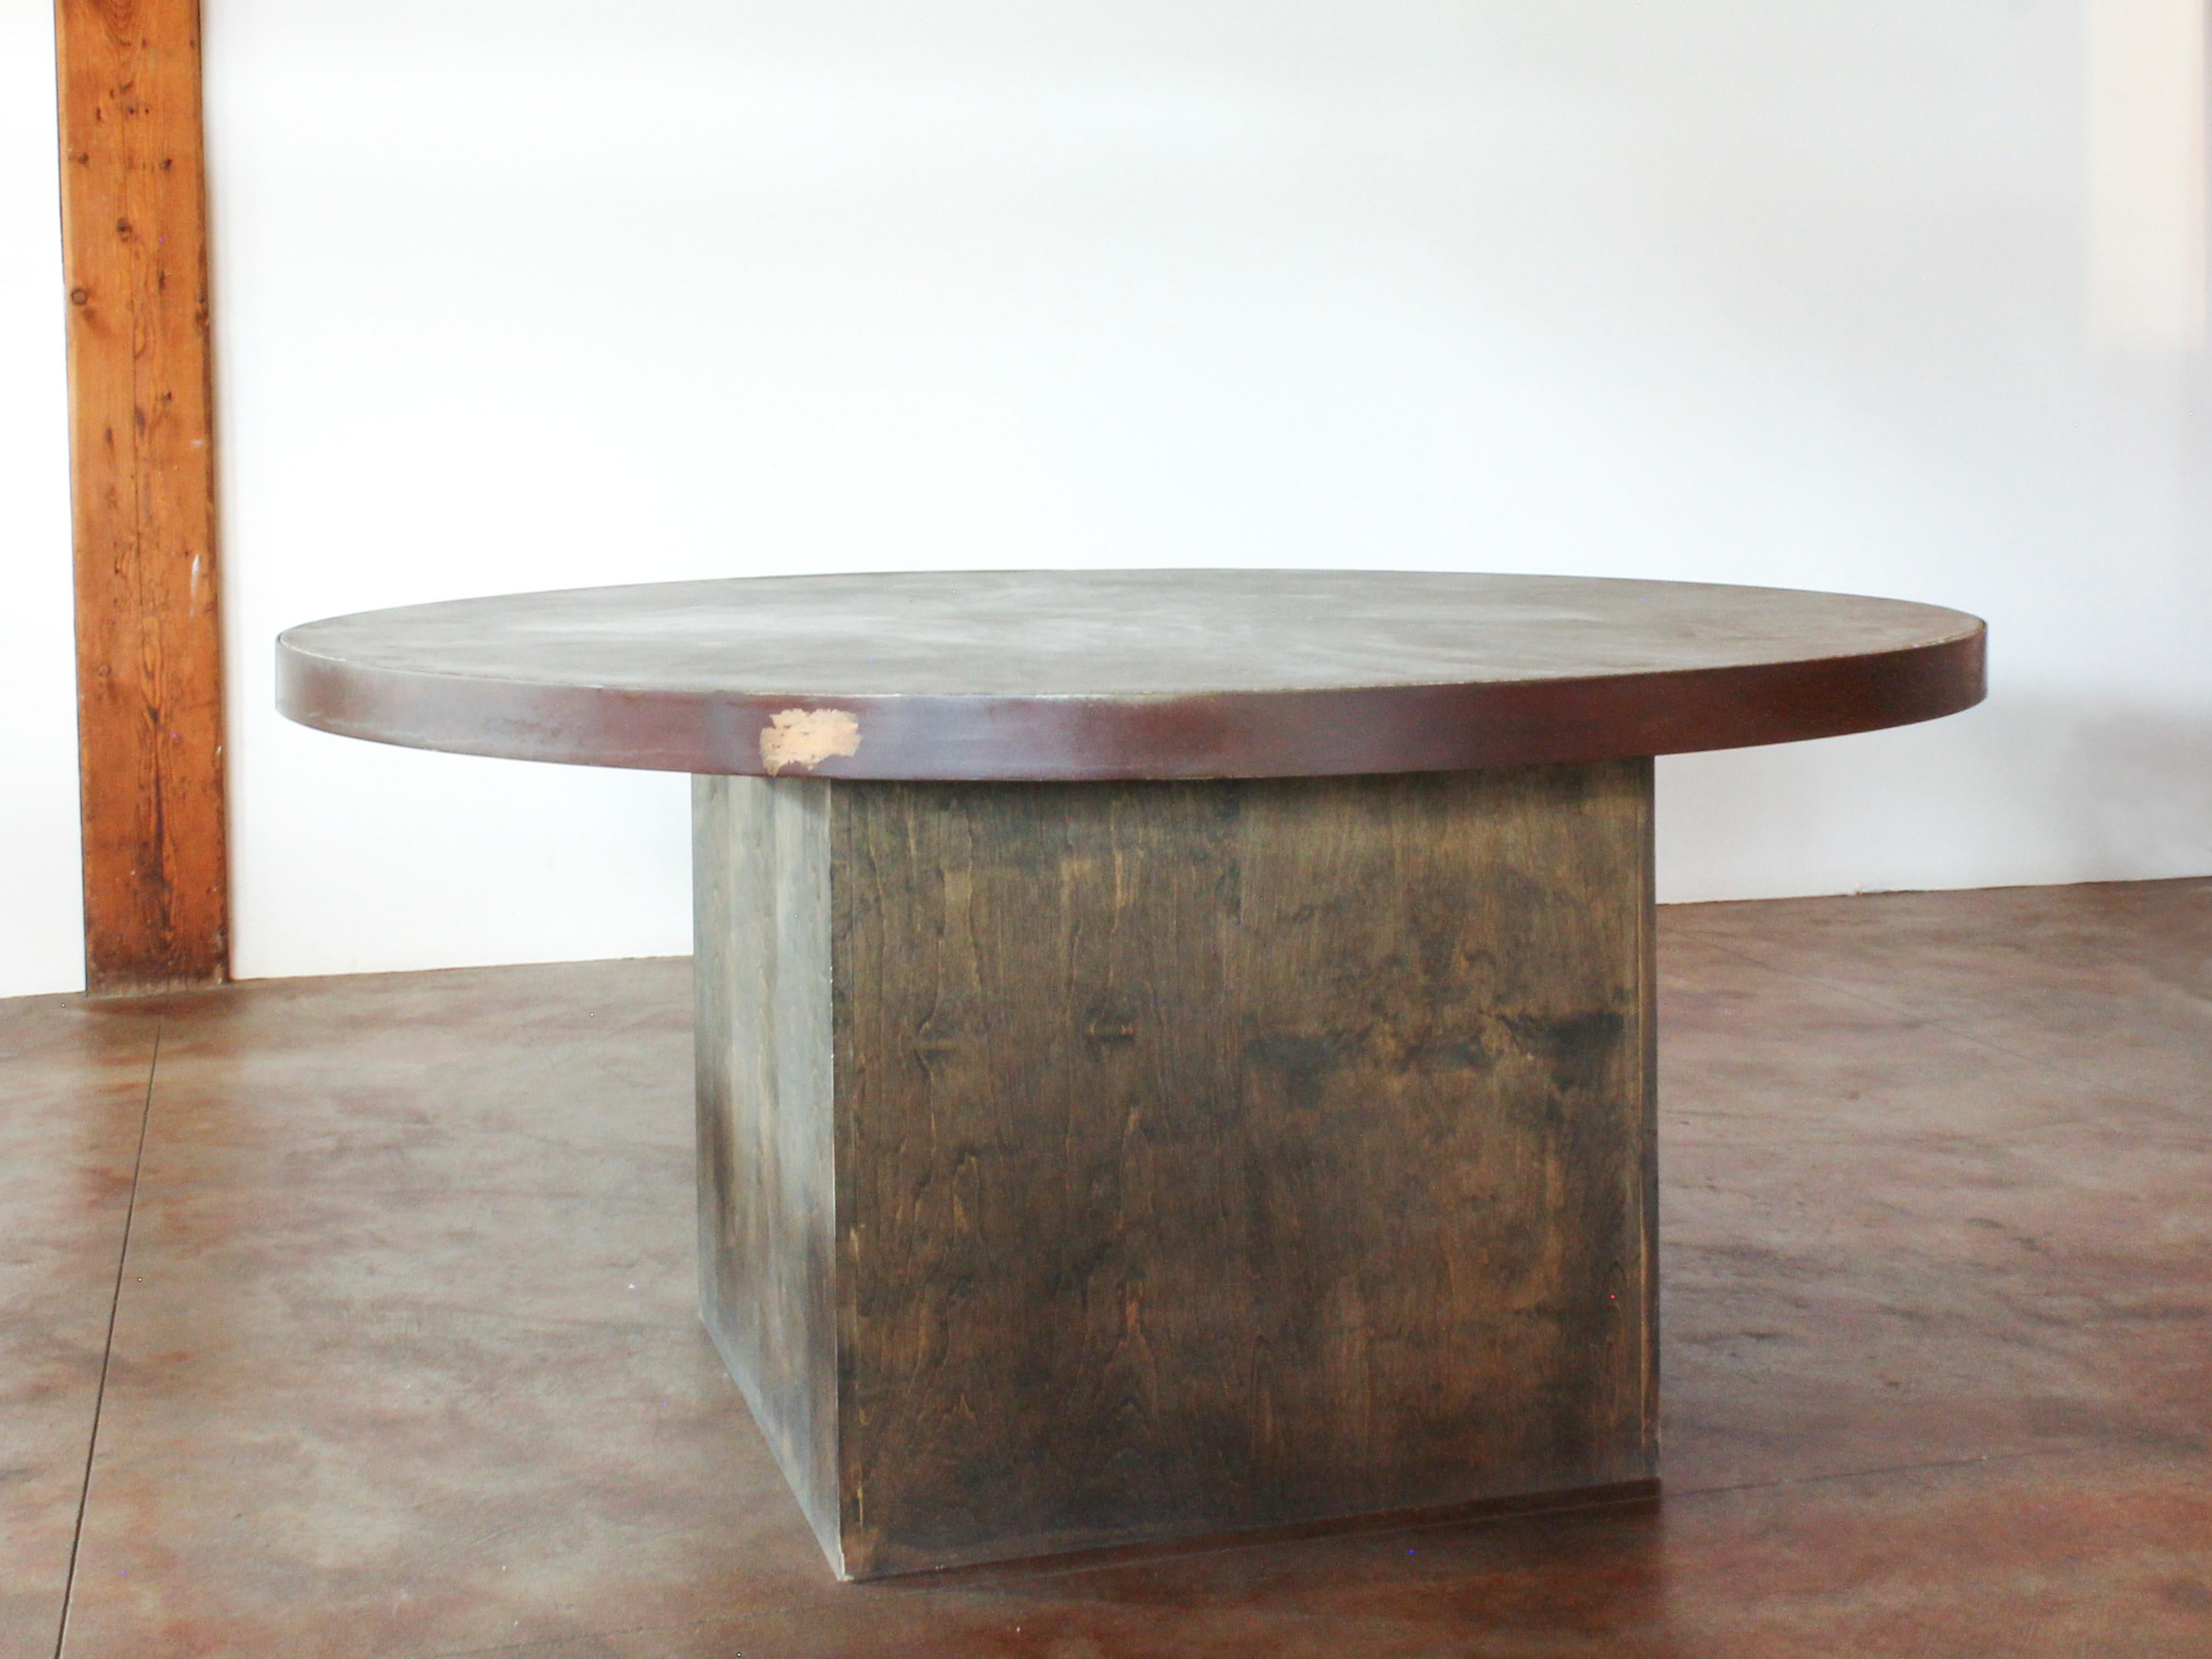 Runder Esstisch mit Sockel, Platte aus Beton mit Stahlumrandung, auf einem Sockel aus grauem, anilingefärbtem Holz. Schöne Patina. Sehr schwer.